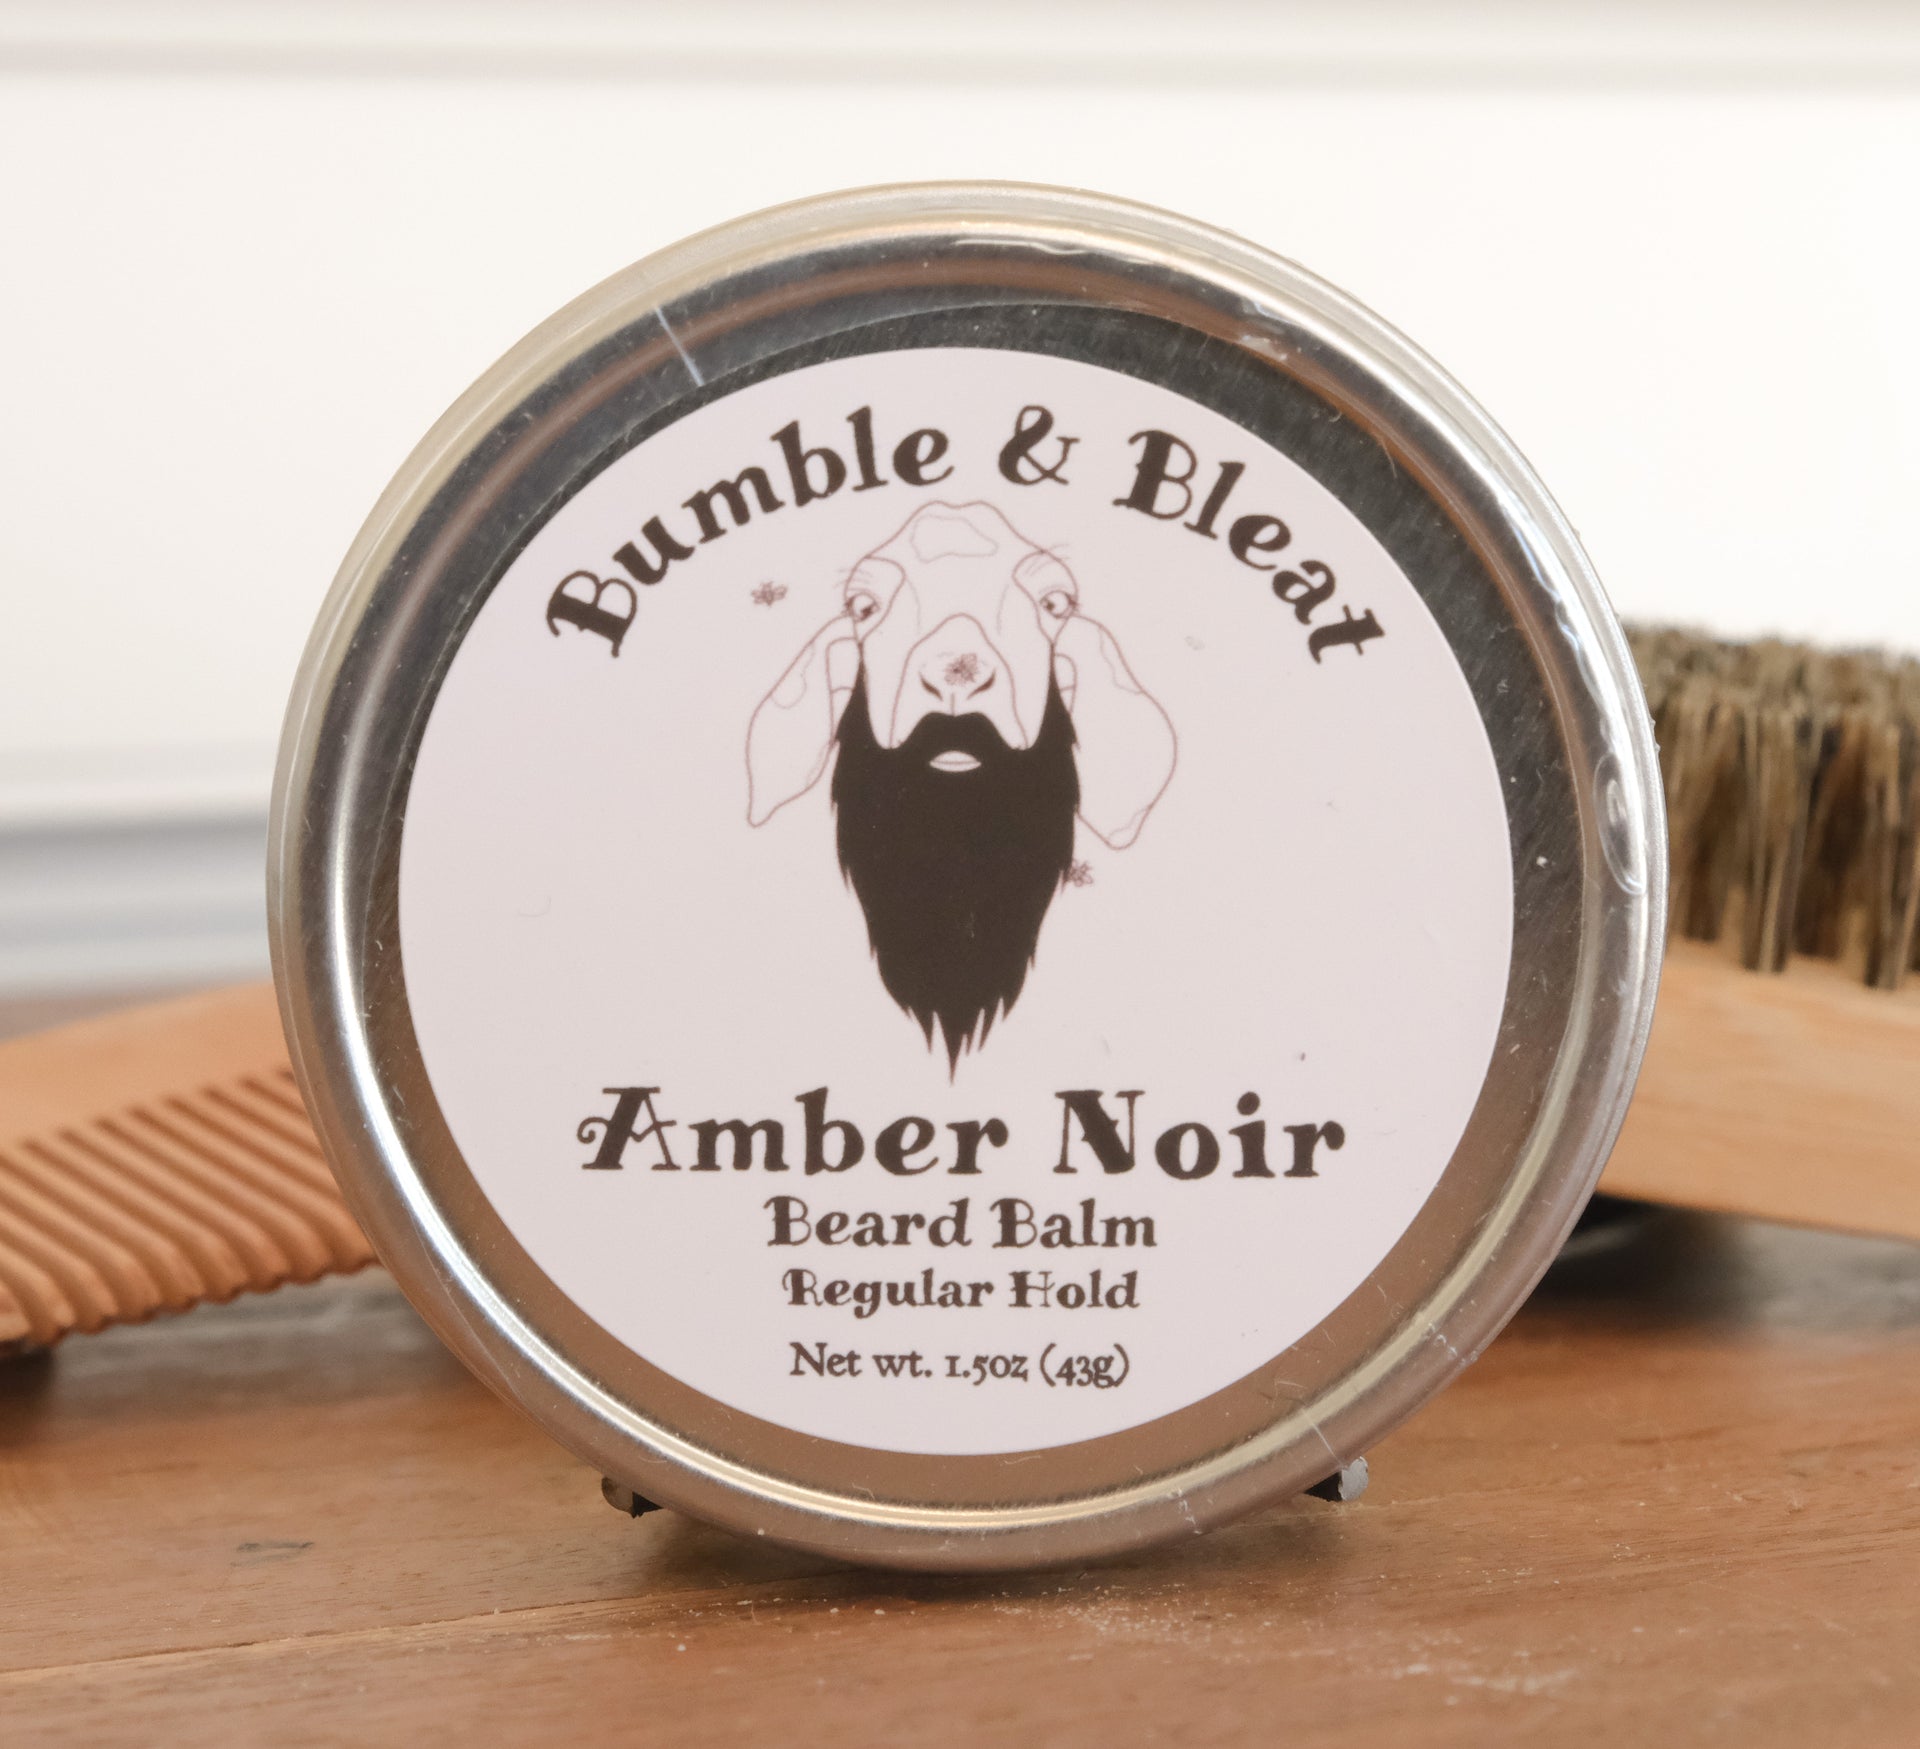 Amber Noir Beard Balm